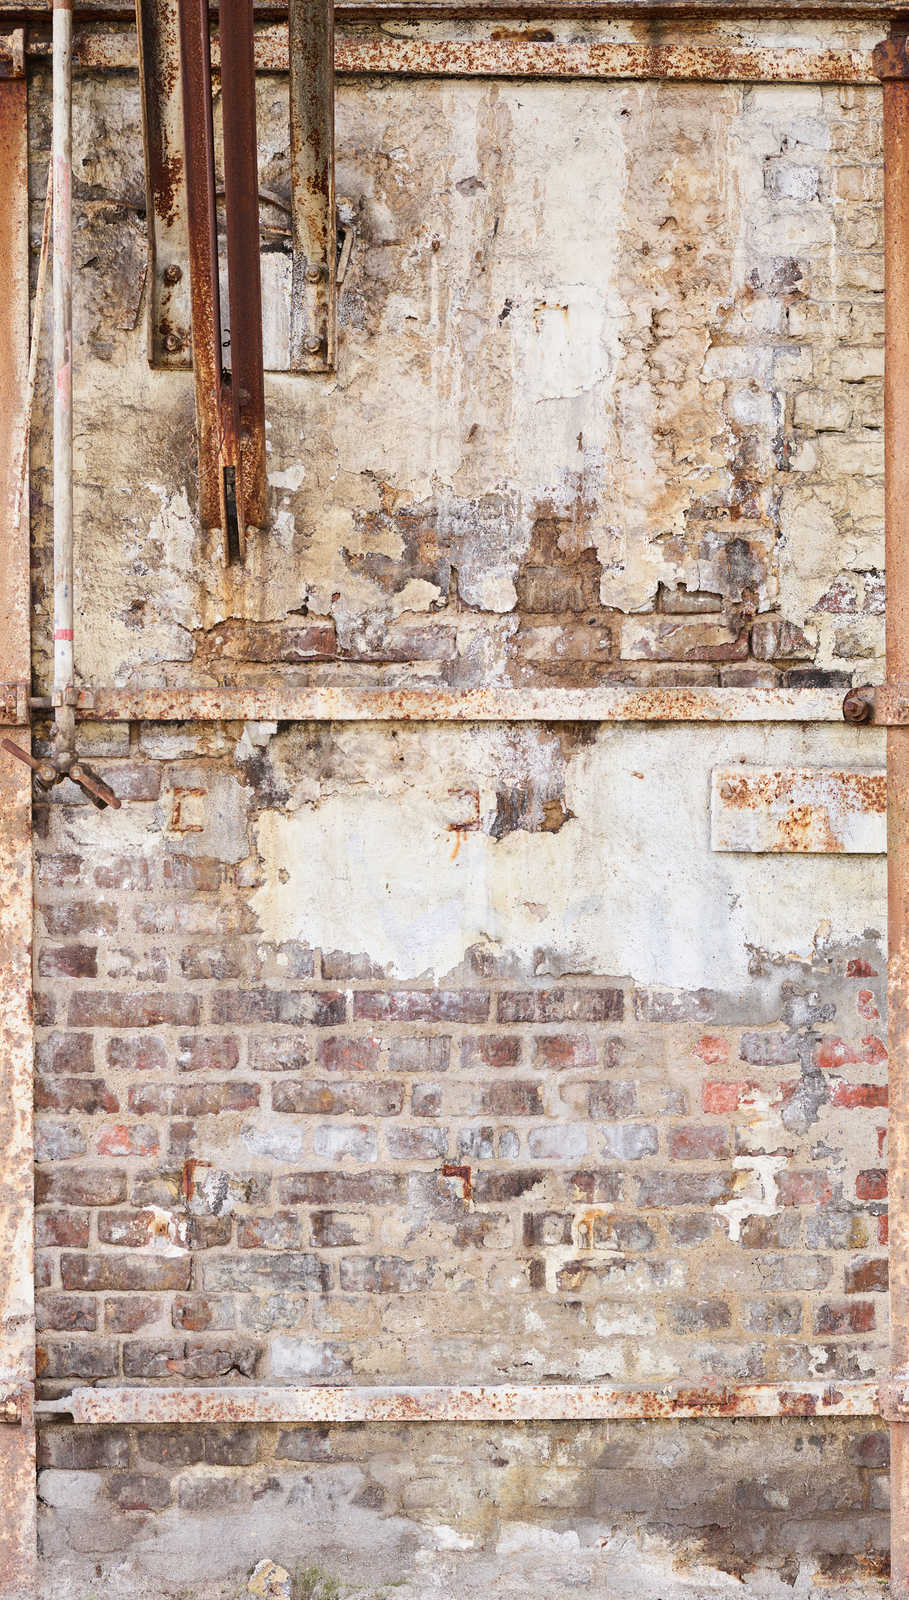             Papier peint intissé vieux mur de briques avec armature métallique rouillée - crème, marron, beige
        